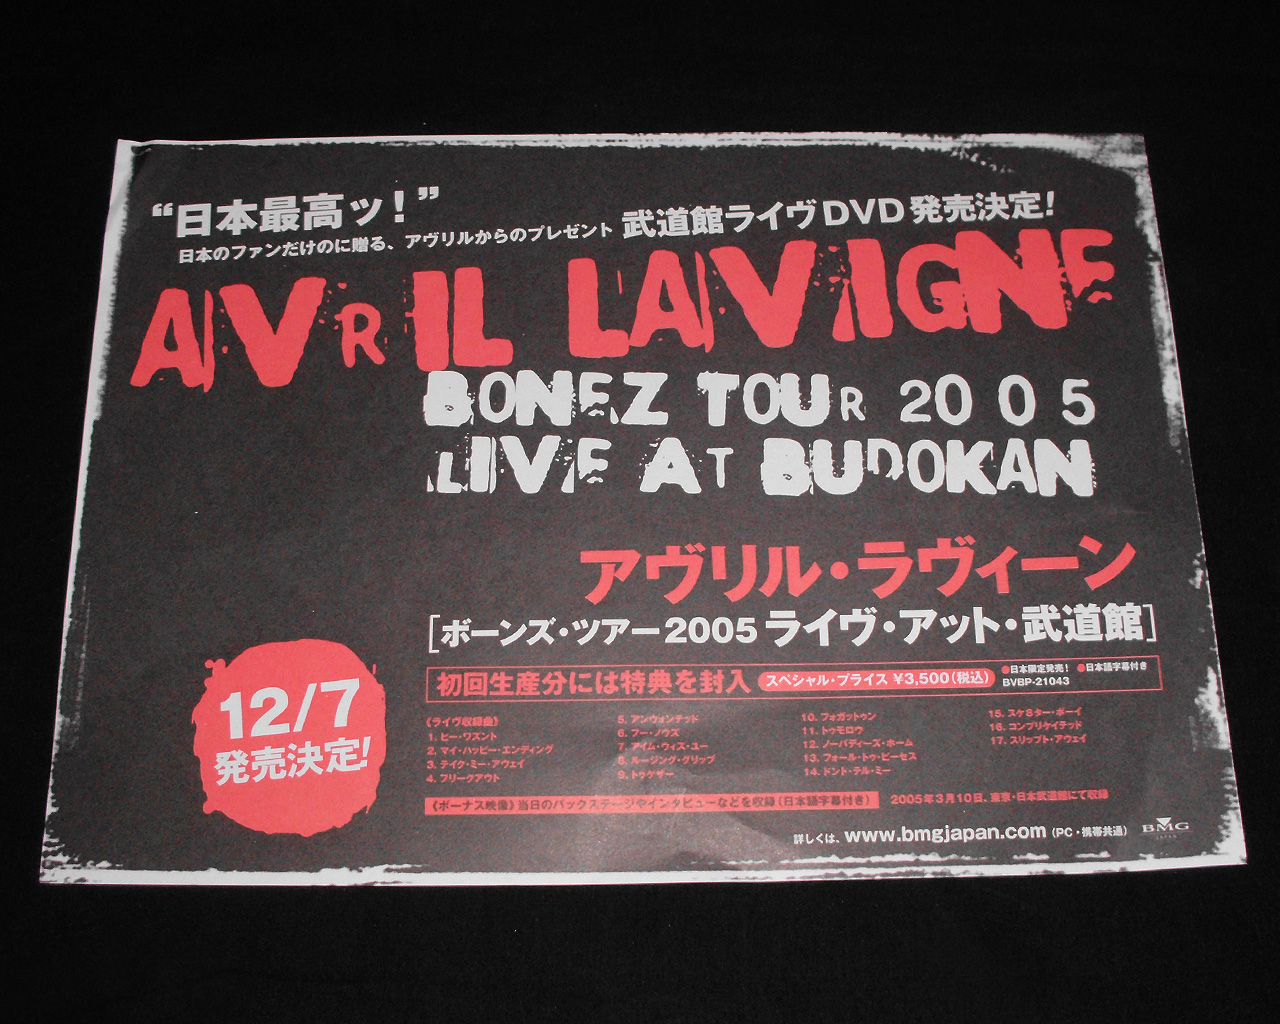 http://3.bp.blogspot.com/-Fjr-_NLwc5I/T2YOIWSey4I/AAAAAAAAArs/54ubJapsHj4/s1600/bonez+tour+2005+live+at+budokan+dvd+flyer.jpg